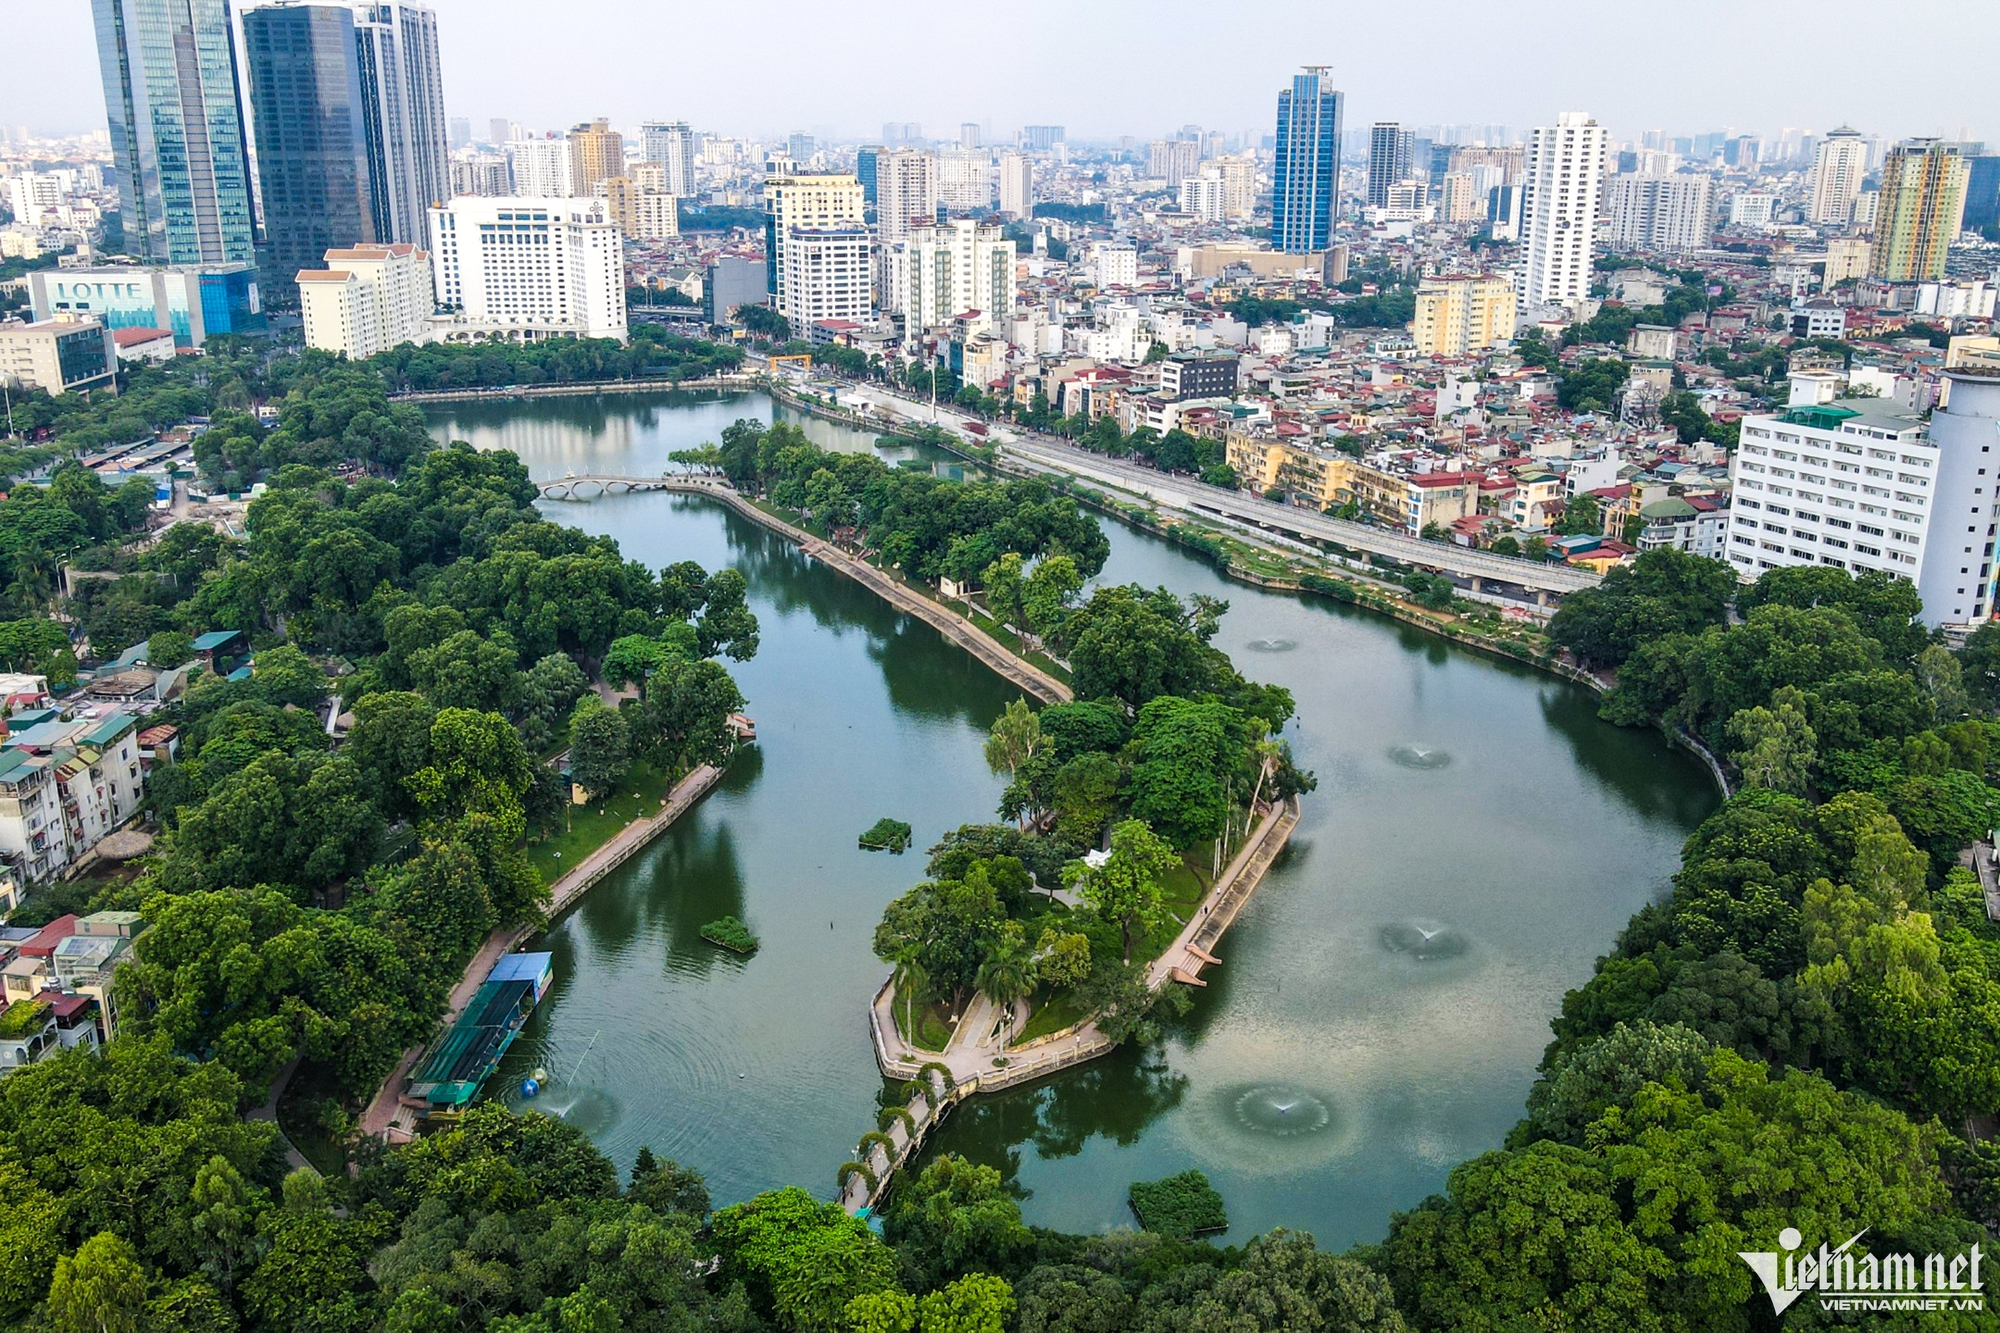 Ba công viên lớn nhất Hà Nội trong cảnh xuống cấp, nhếch nhác - Ảnh 1.